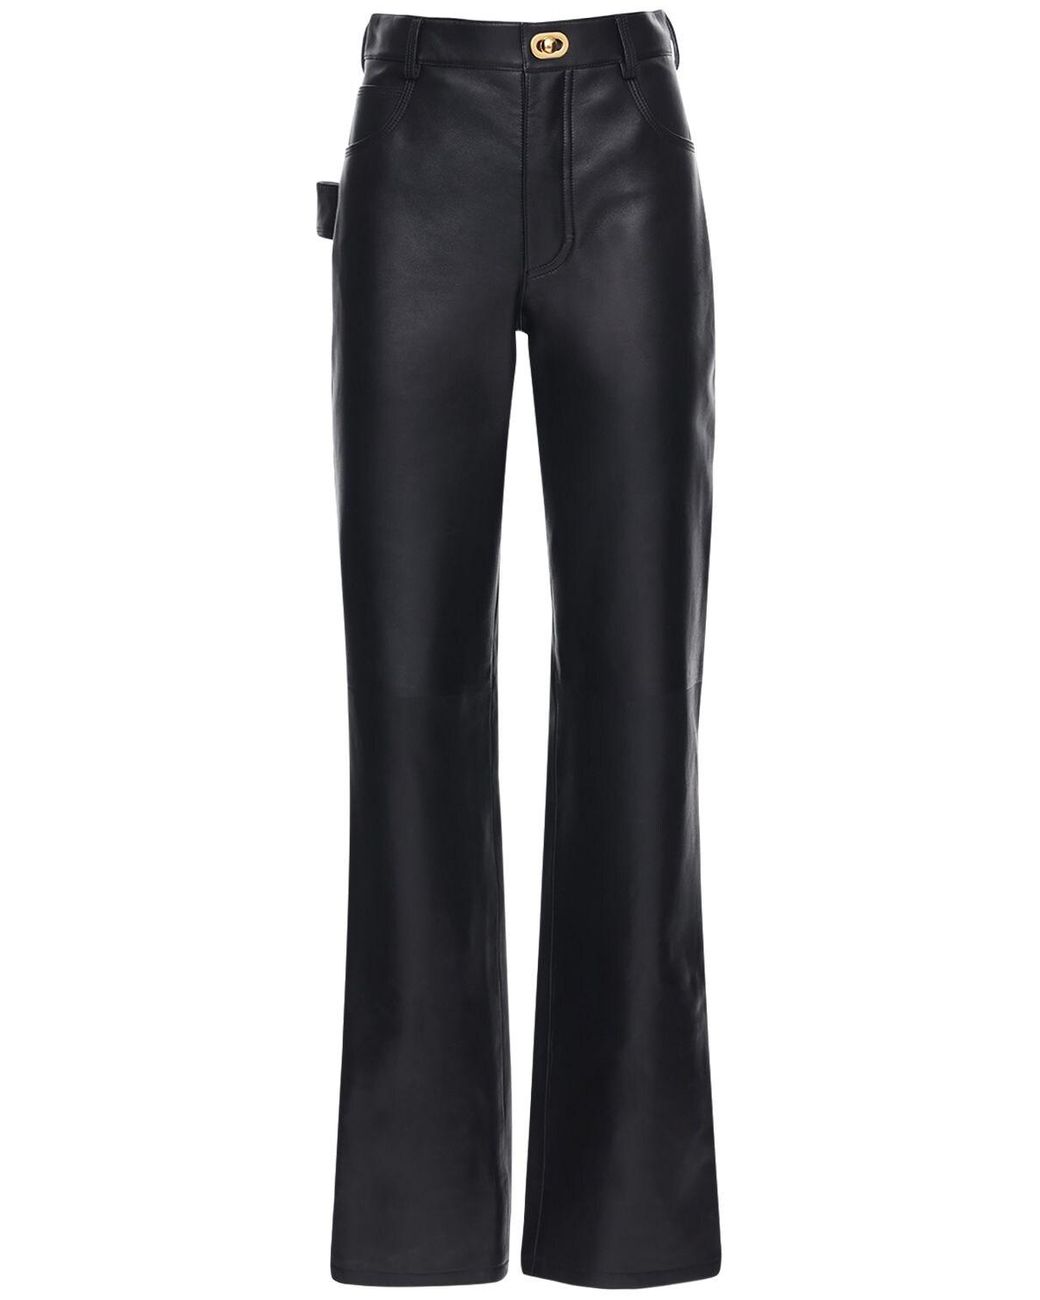 Bottega Veneta Leather Pants W/ Metal Buckles in Black - Lyst